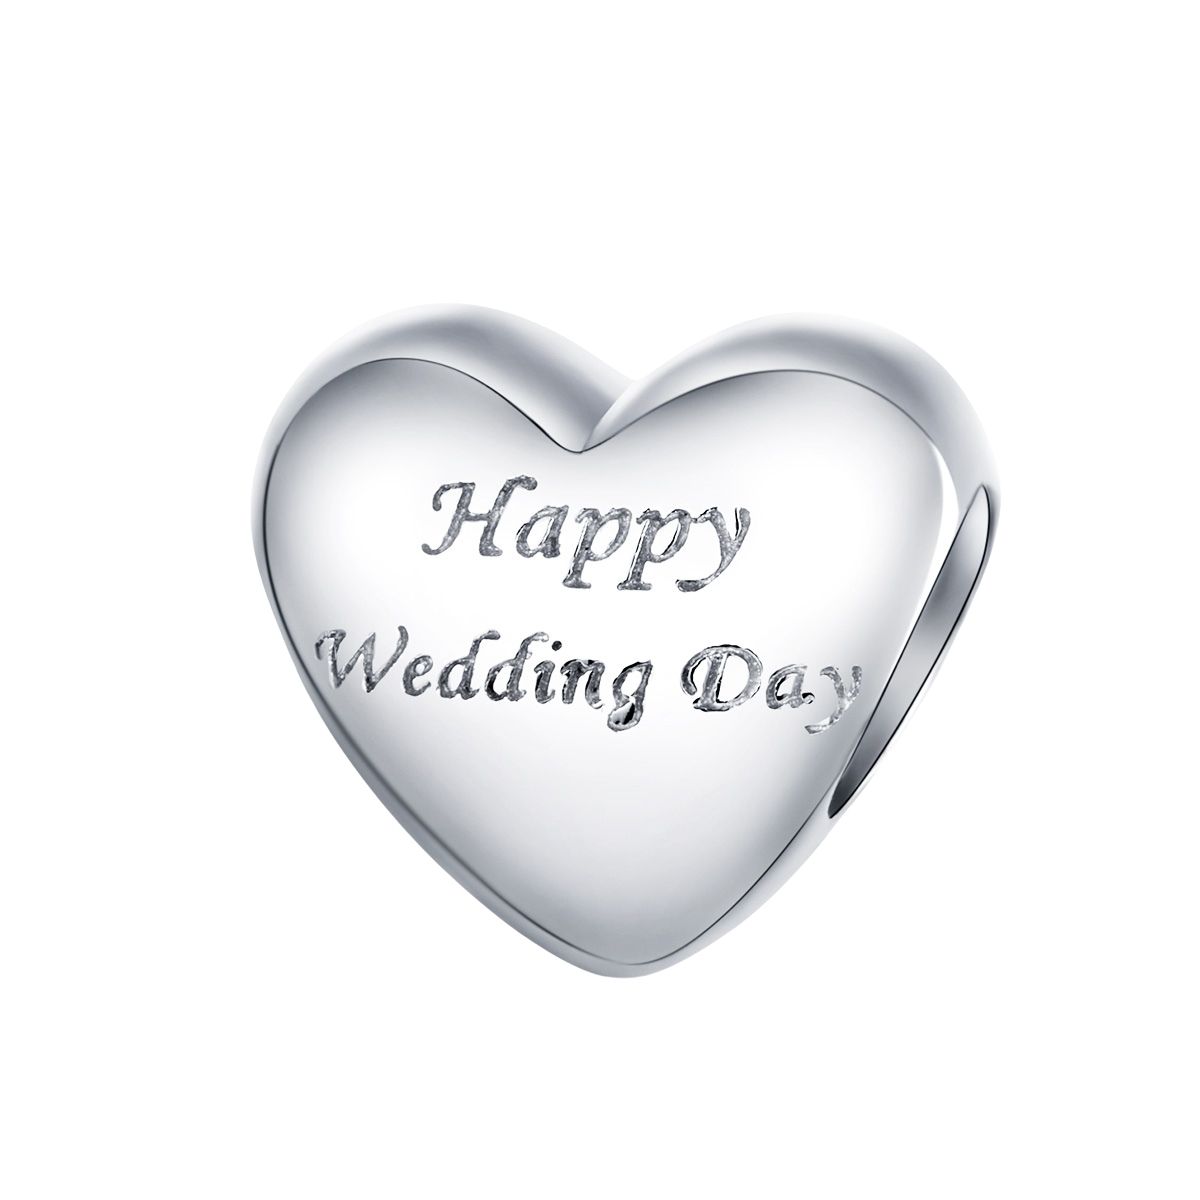 Hart happy wedding day bead  hart huwelijk trouwdag bedel  Zilverana  geschikt voor Biagi , Pandora , Trollbeads armband  925 zilver